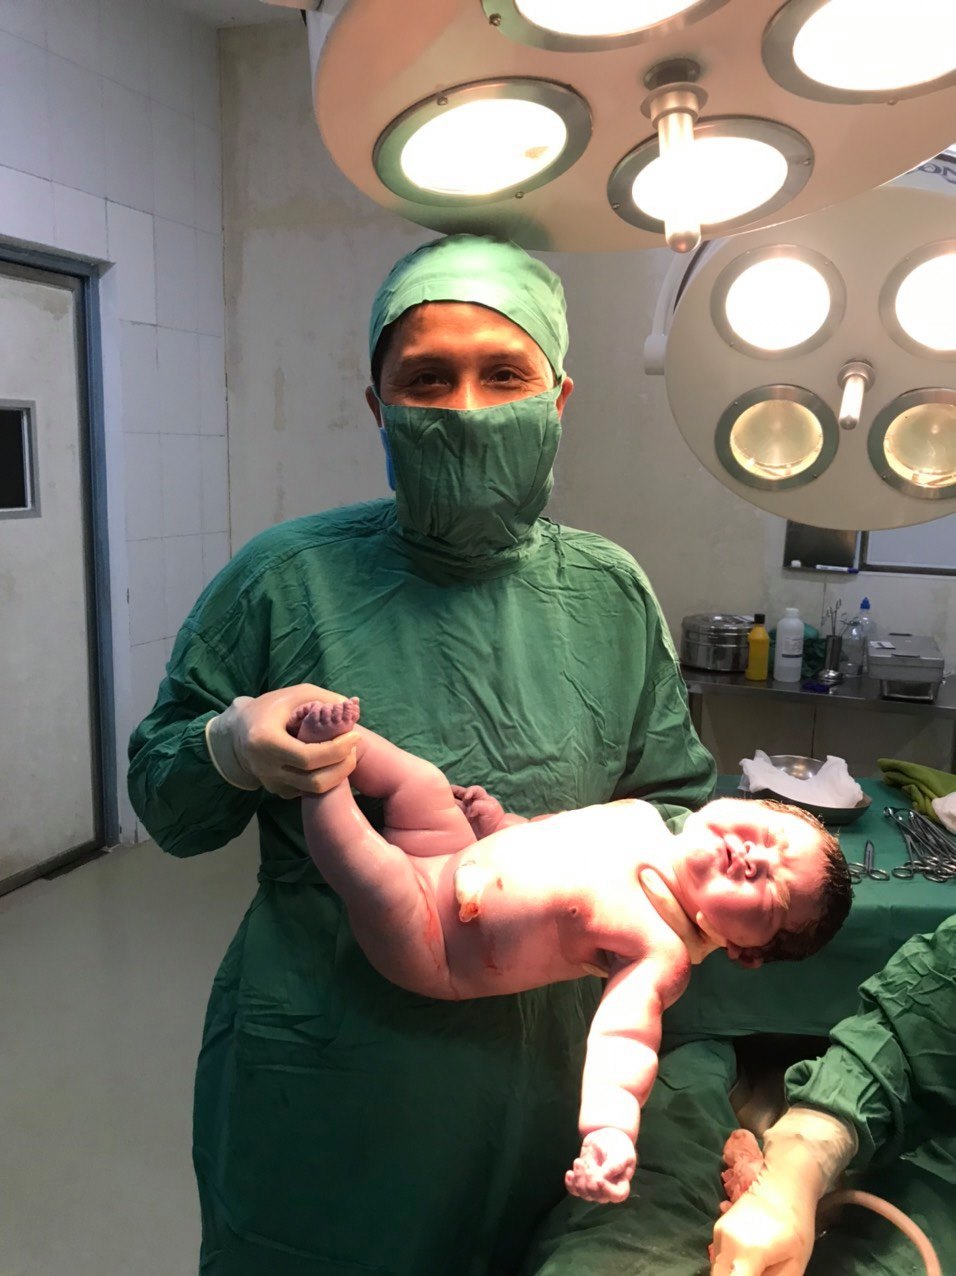 Bé trai sơ sinh nặng hơn 6 kg chào đời ở Quảng Trị